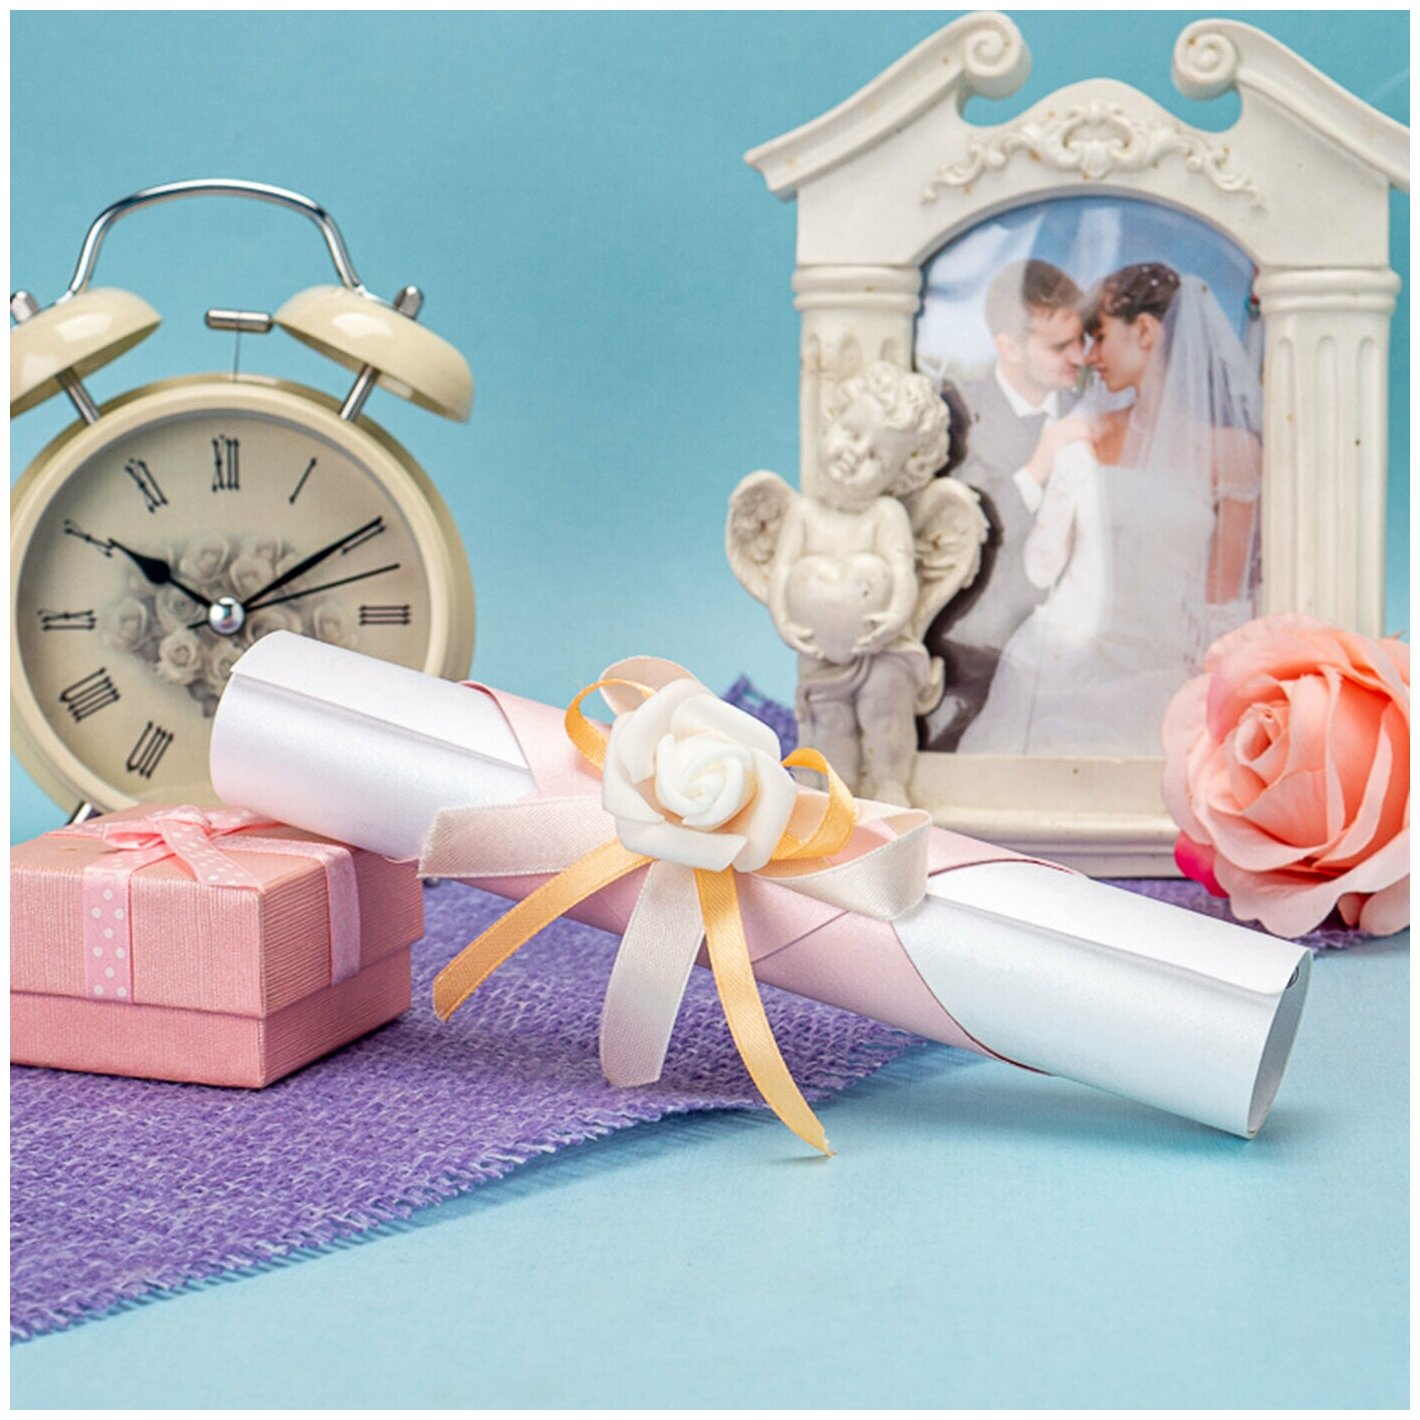 Сияющее свадебное приглашение в виде свитка "Перламутровый сад" с держателем из розовой бумаги и декором из латексной розы белого цвета с атласными лентами, ручная работа, 5 штук